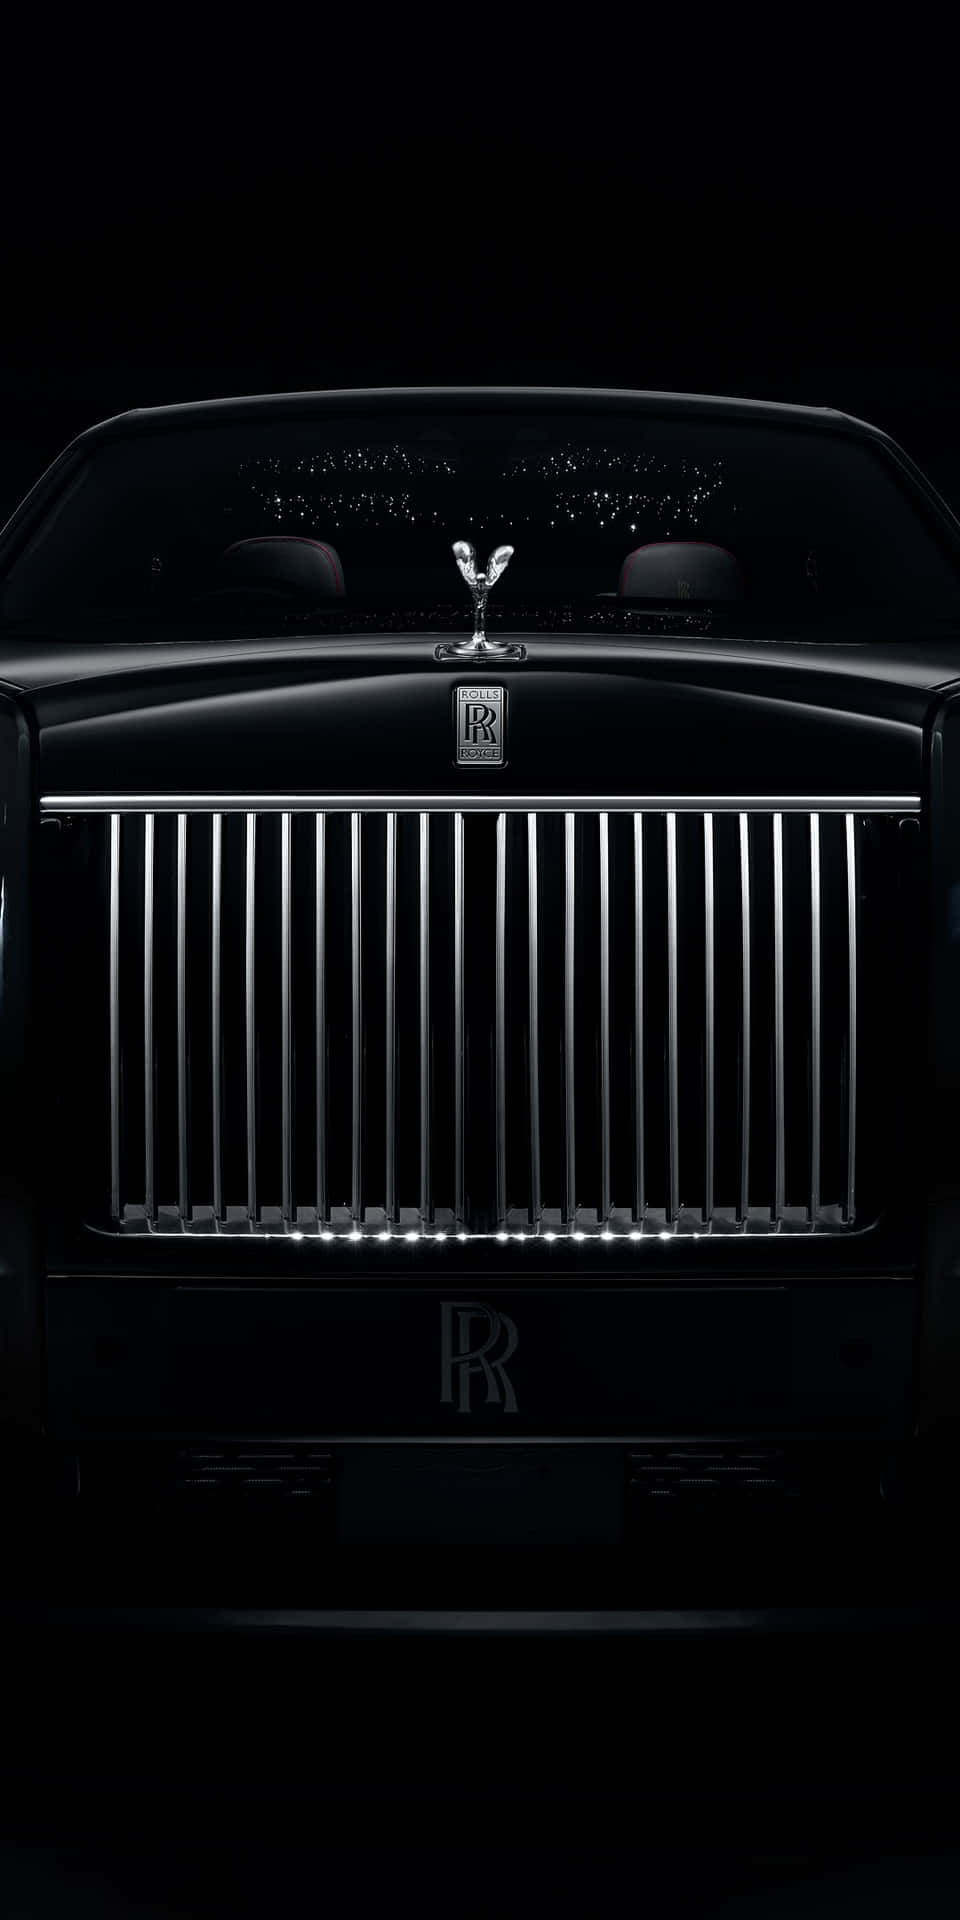 Caption: Upscale Luxury - The Elite Rolls Royce Phantom